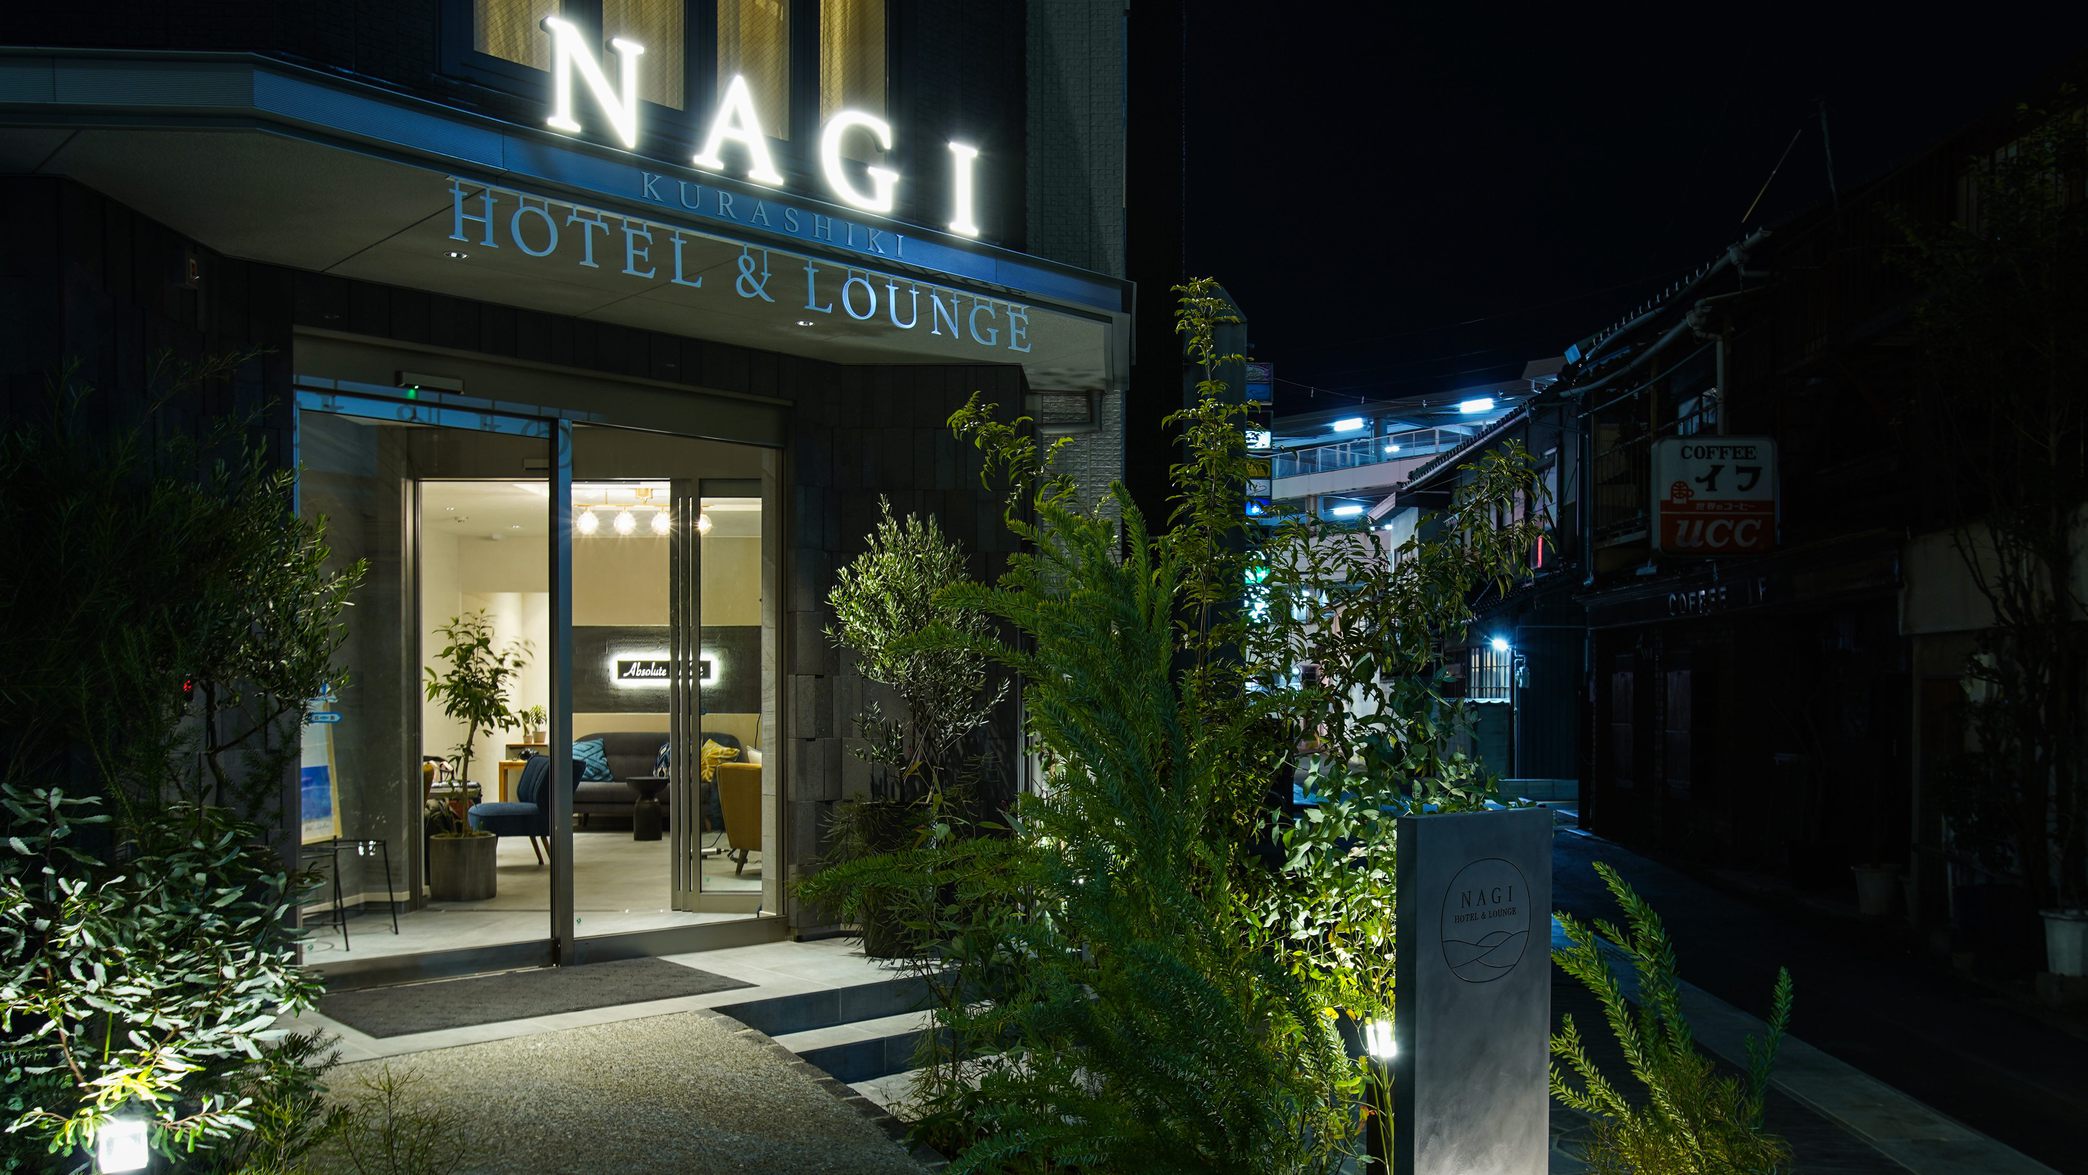 Nagi Kurashiki Hotel & Lounge (나기 쿠라시키)